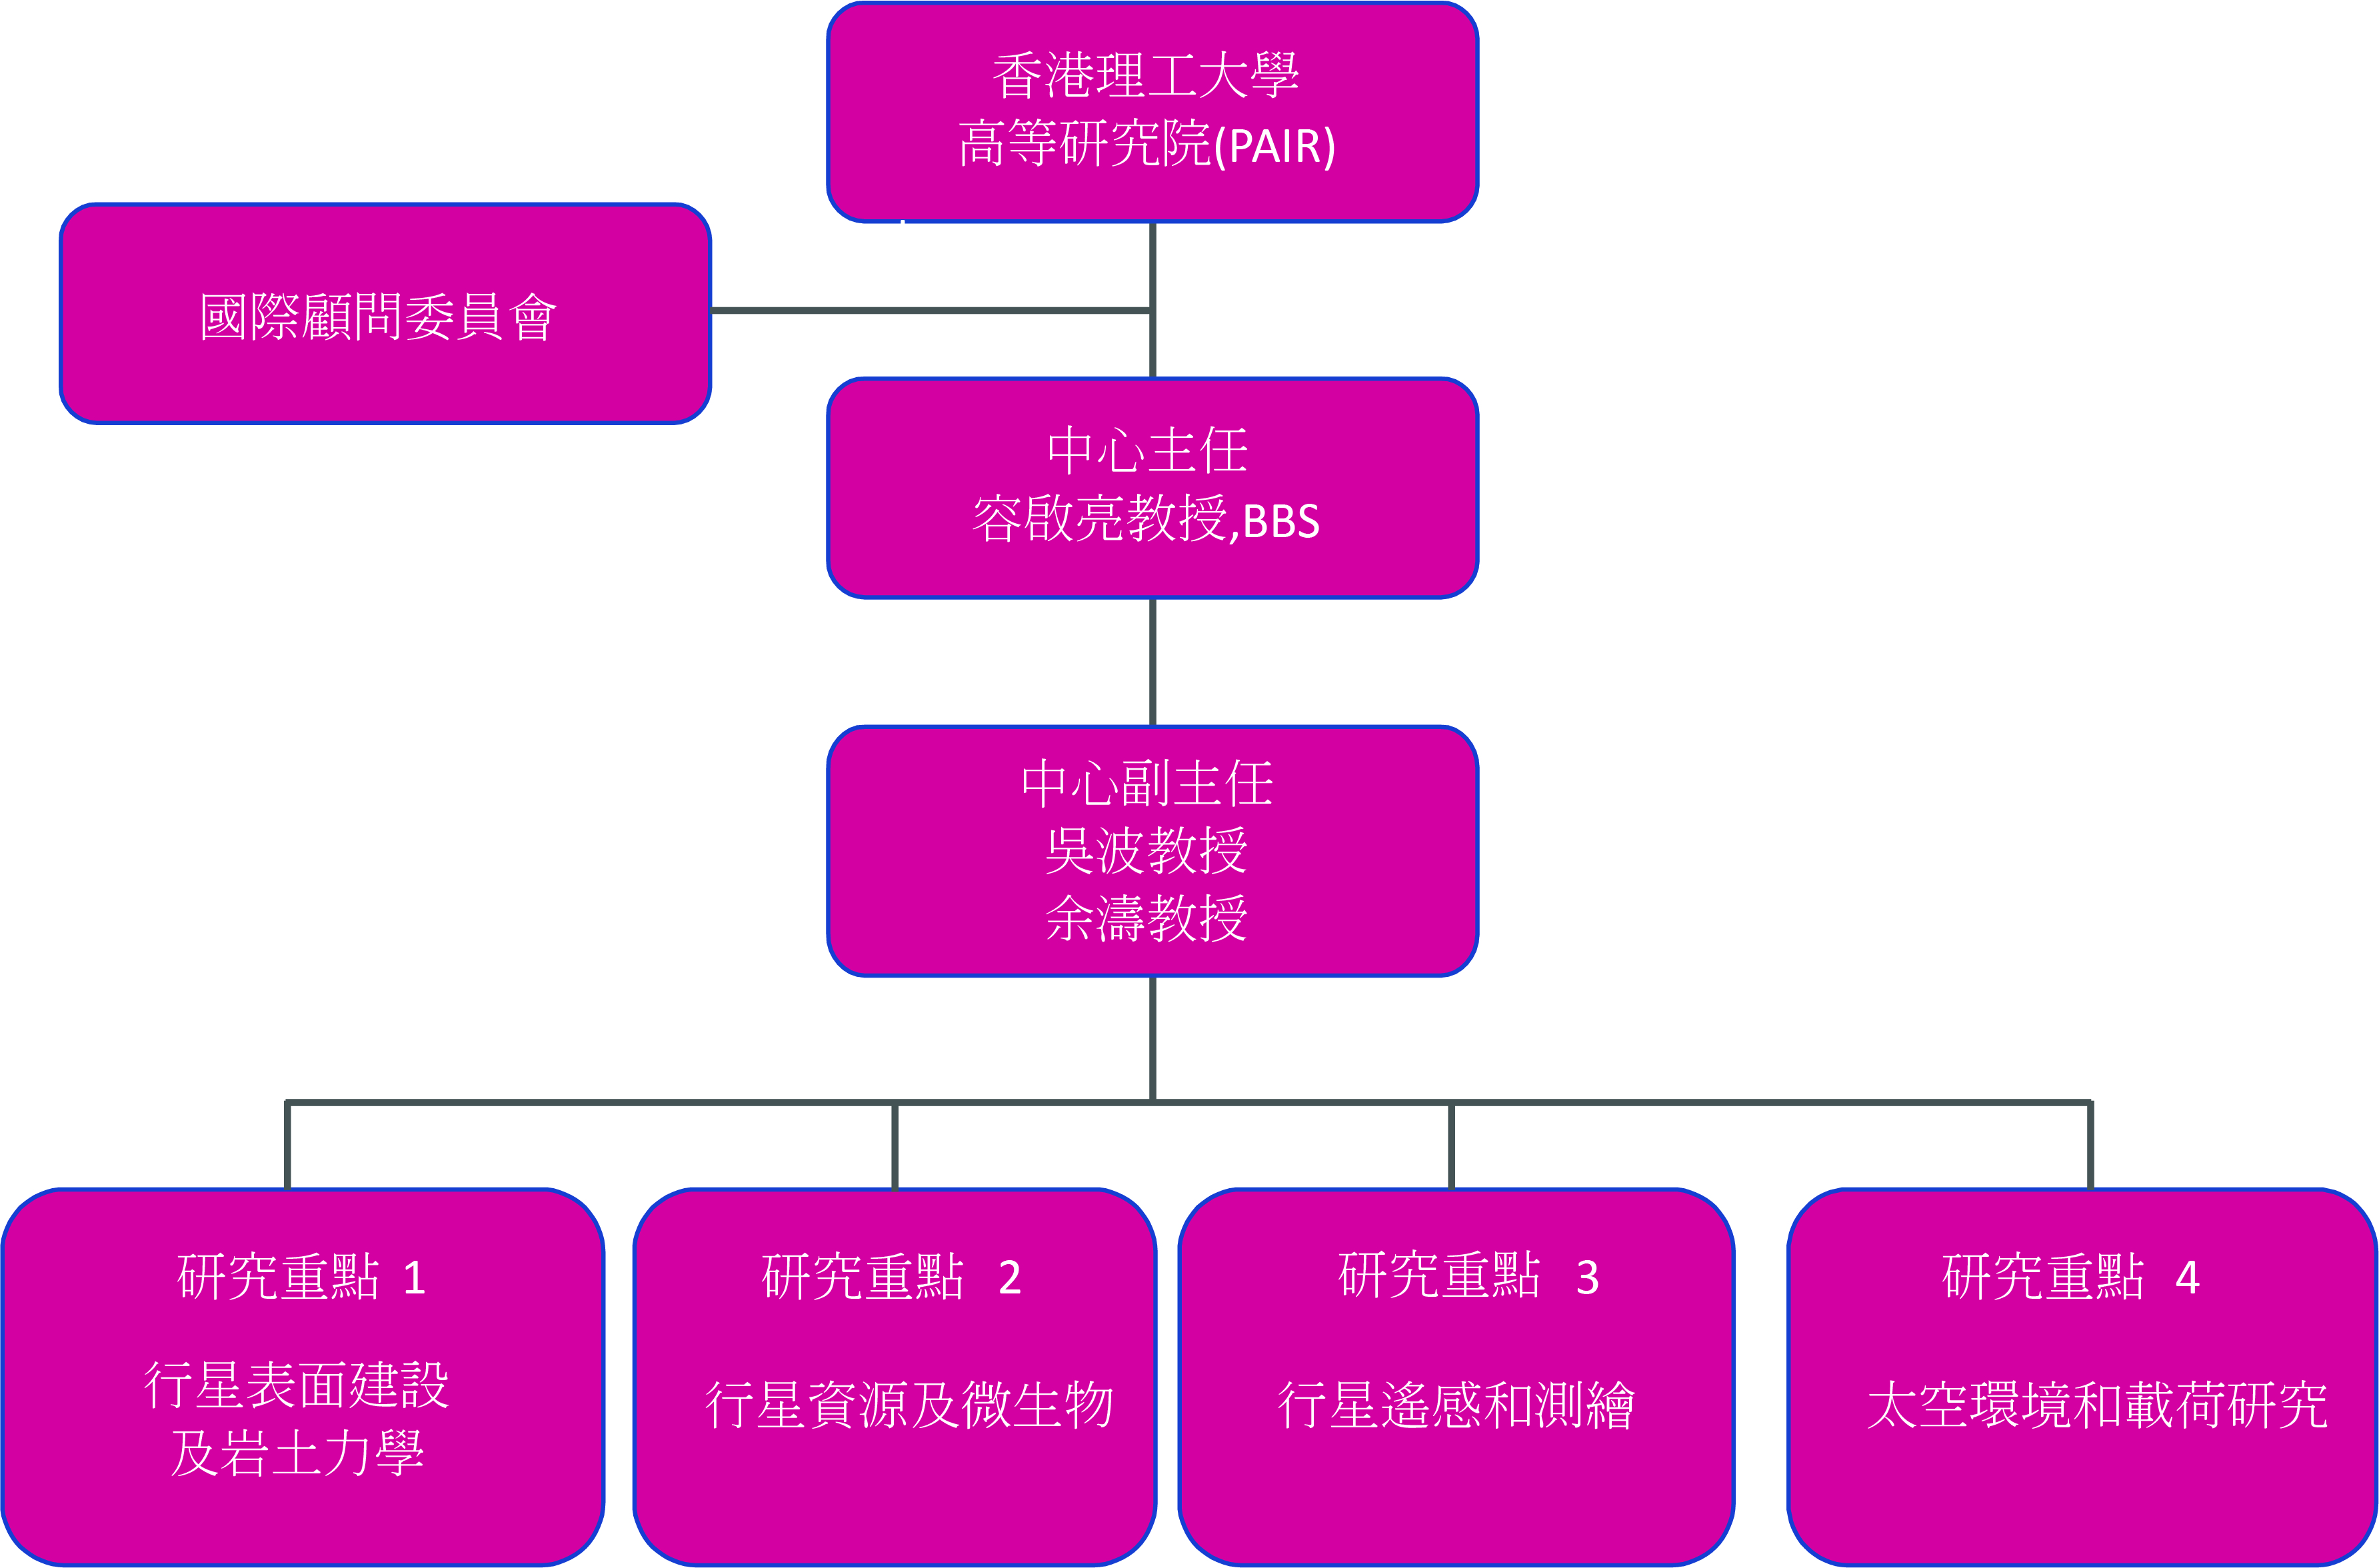 Organization Structure 20211129 AI  Chinese2 003